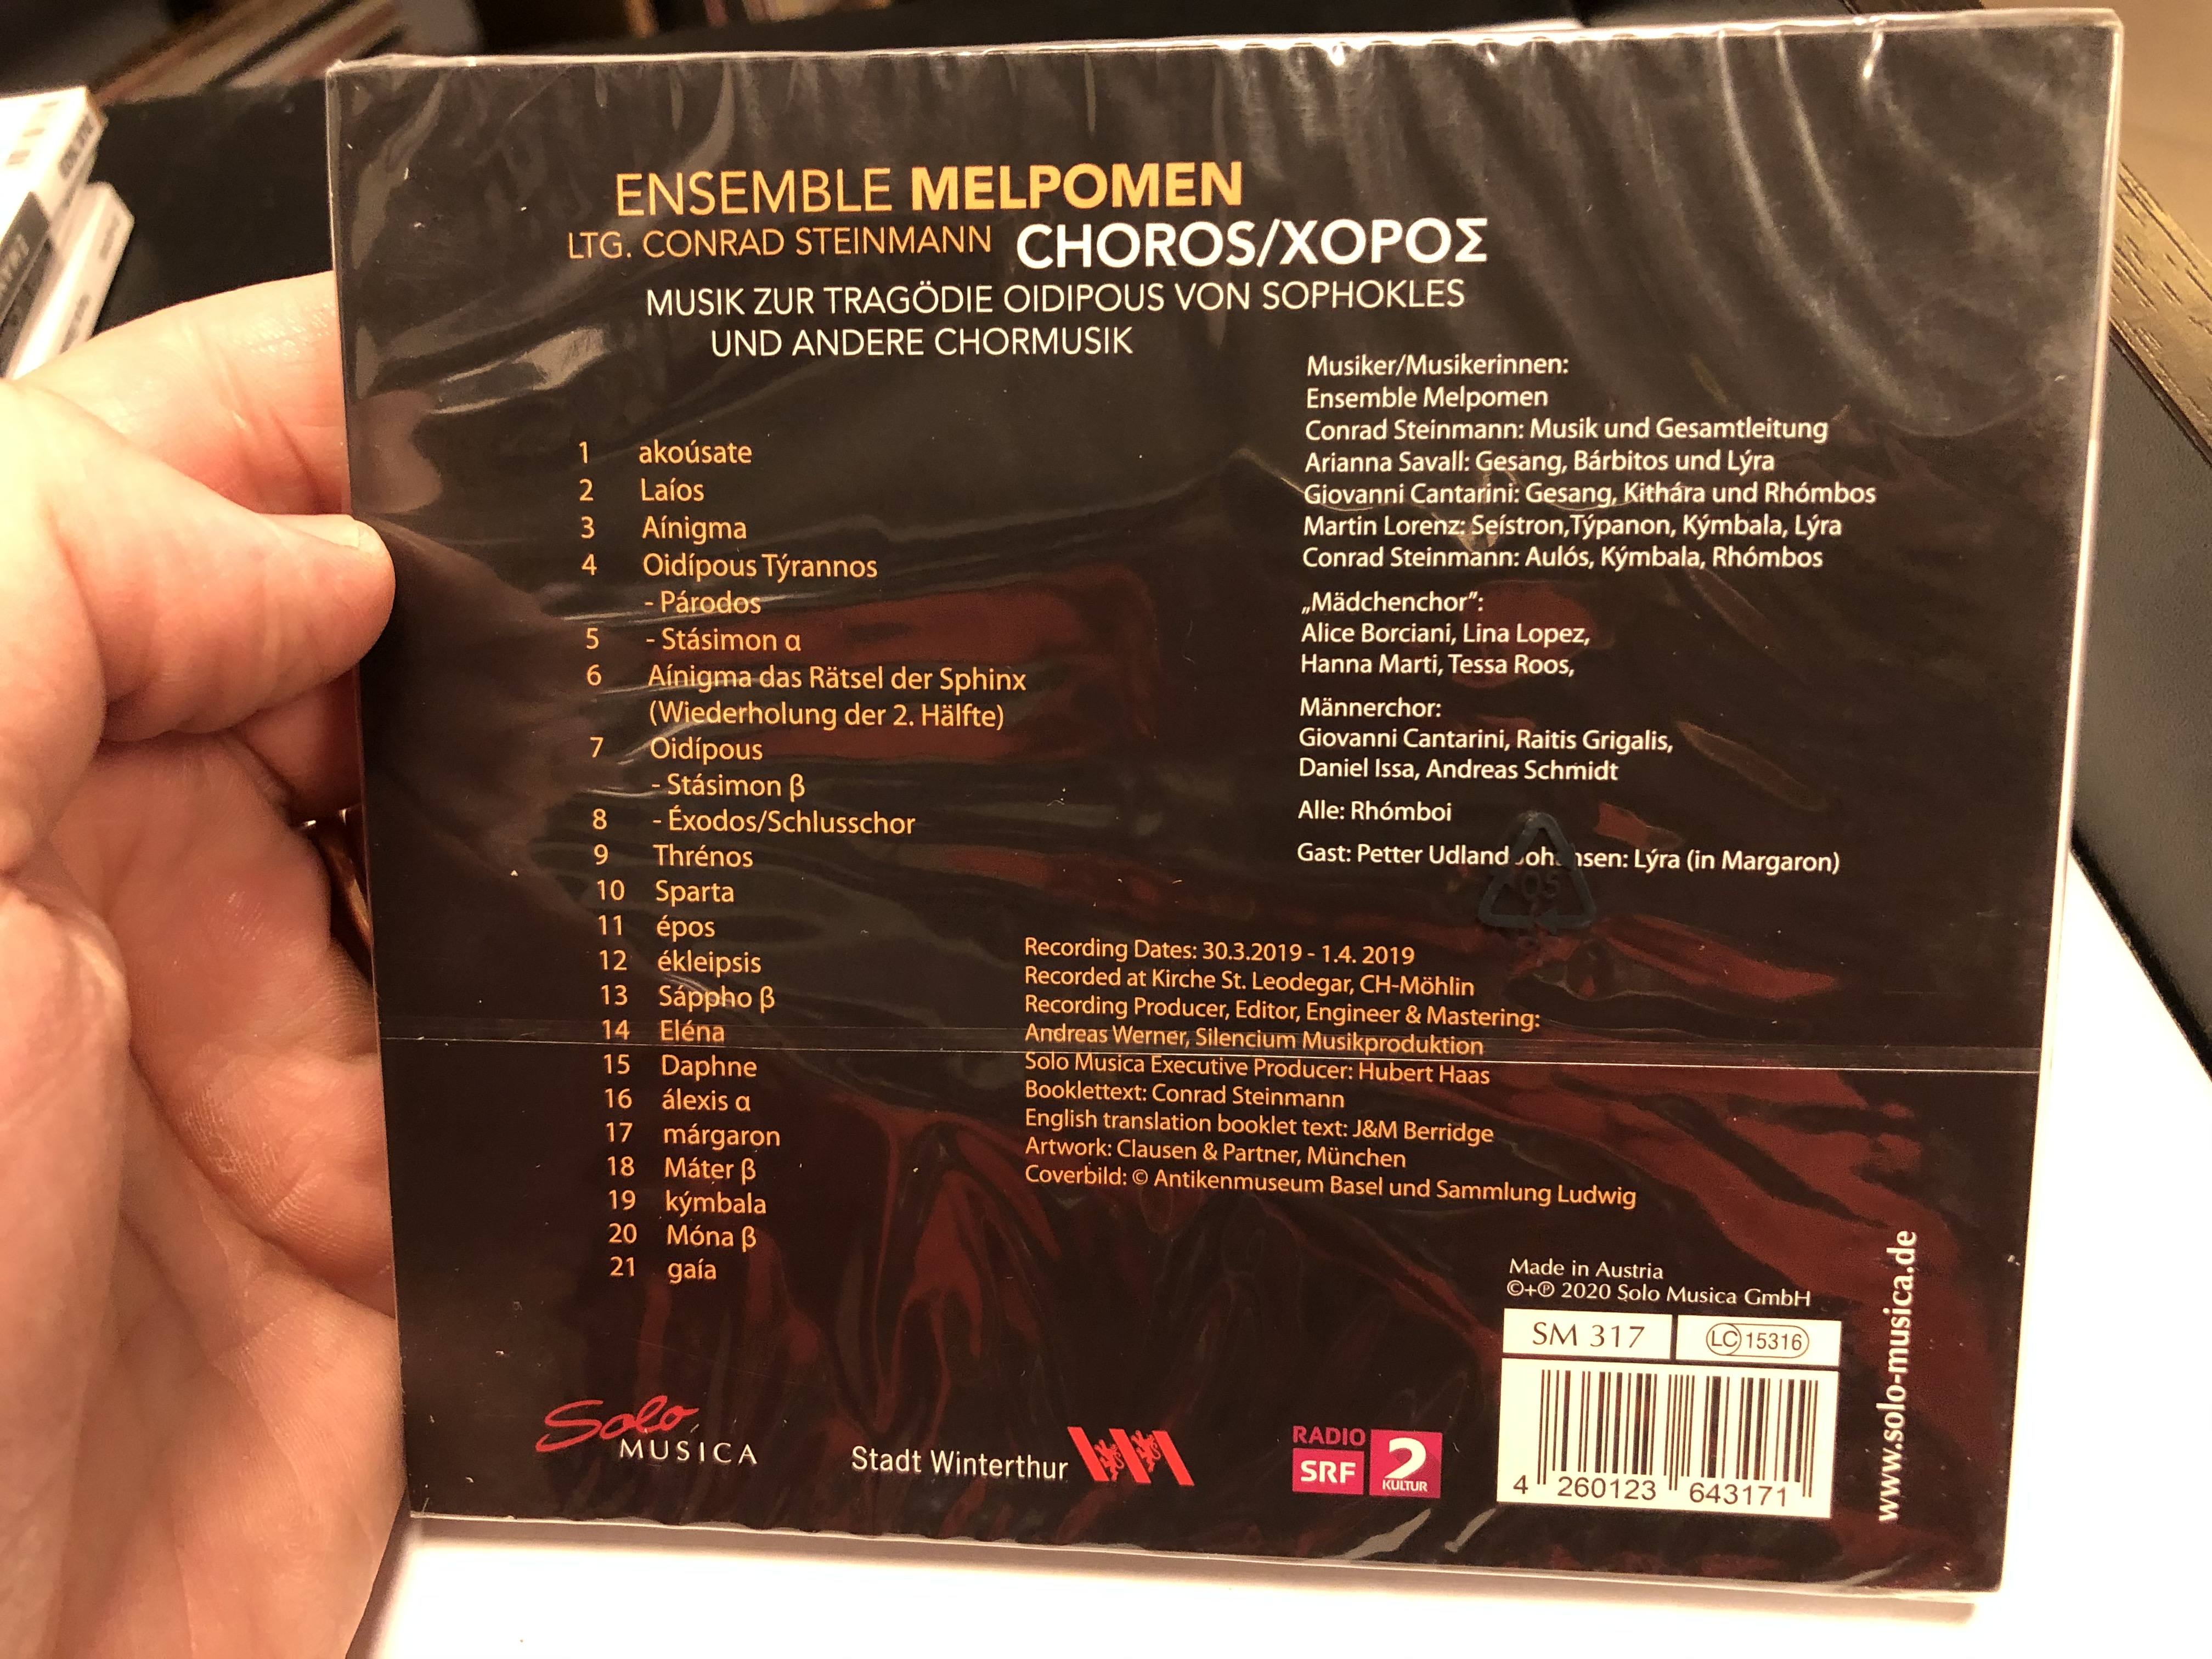 ensemble-melpomen-ltg.-conrad-stenimann-choros-musik-zur-tragodie-oidipous-von-sophokles-und-andere-chormusik-solo-musica-audio-cd-2020-sm-317-2-.jpg